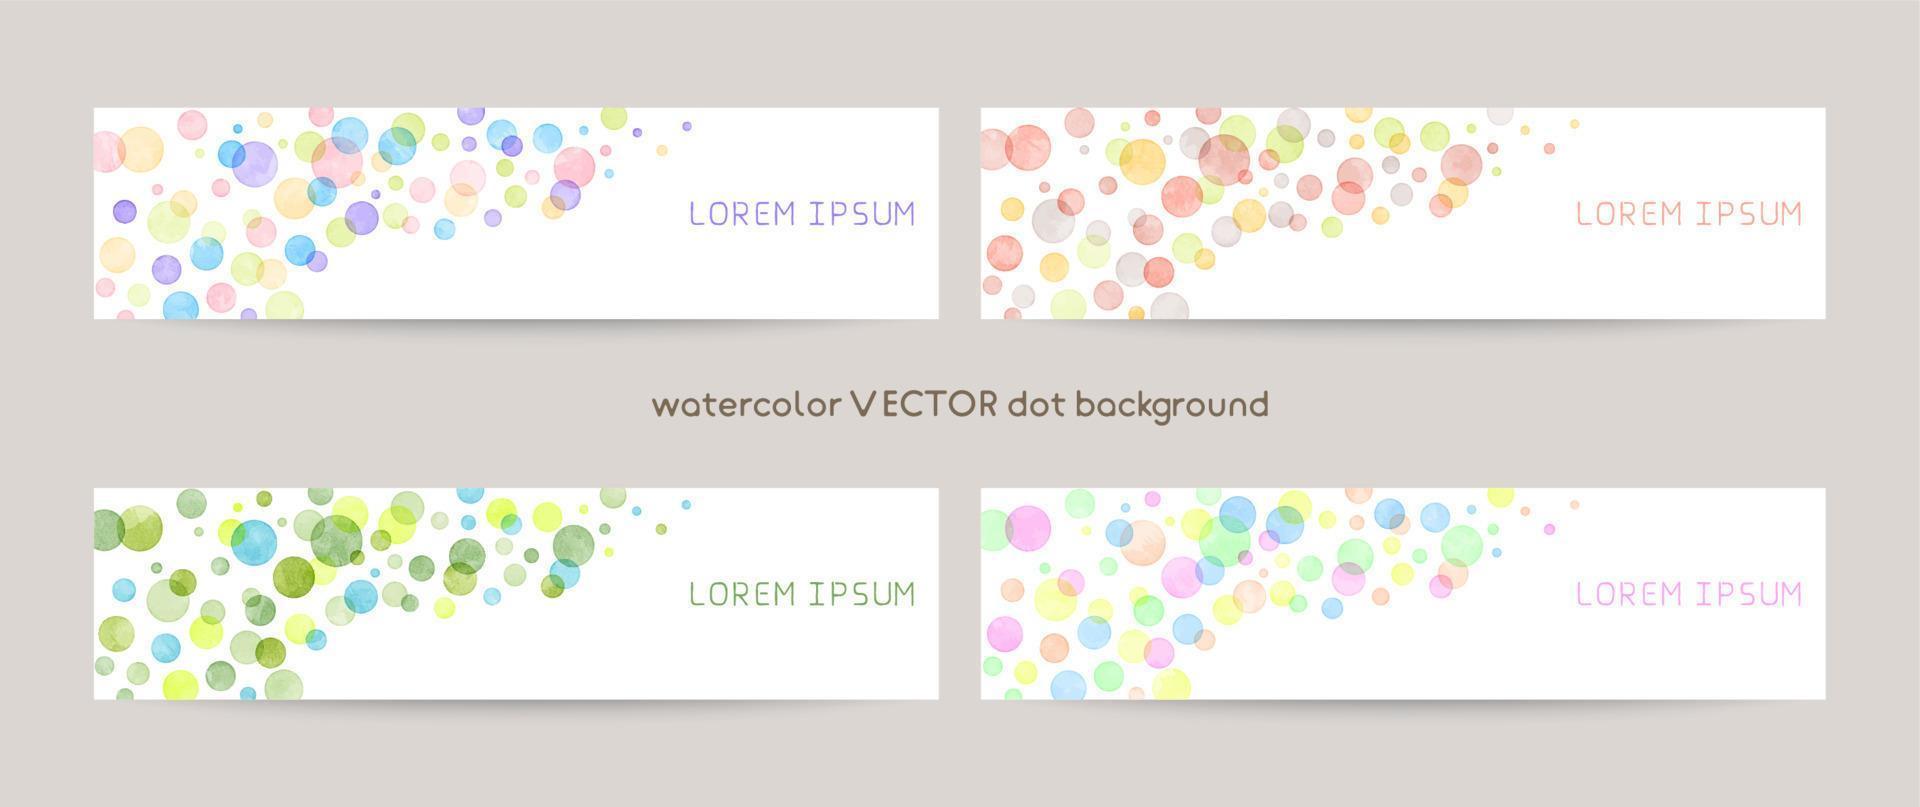 conjunto de fundos coloridos em aquarela vector com espaço em branco para texto. modelo de banner da web